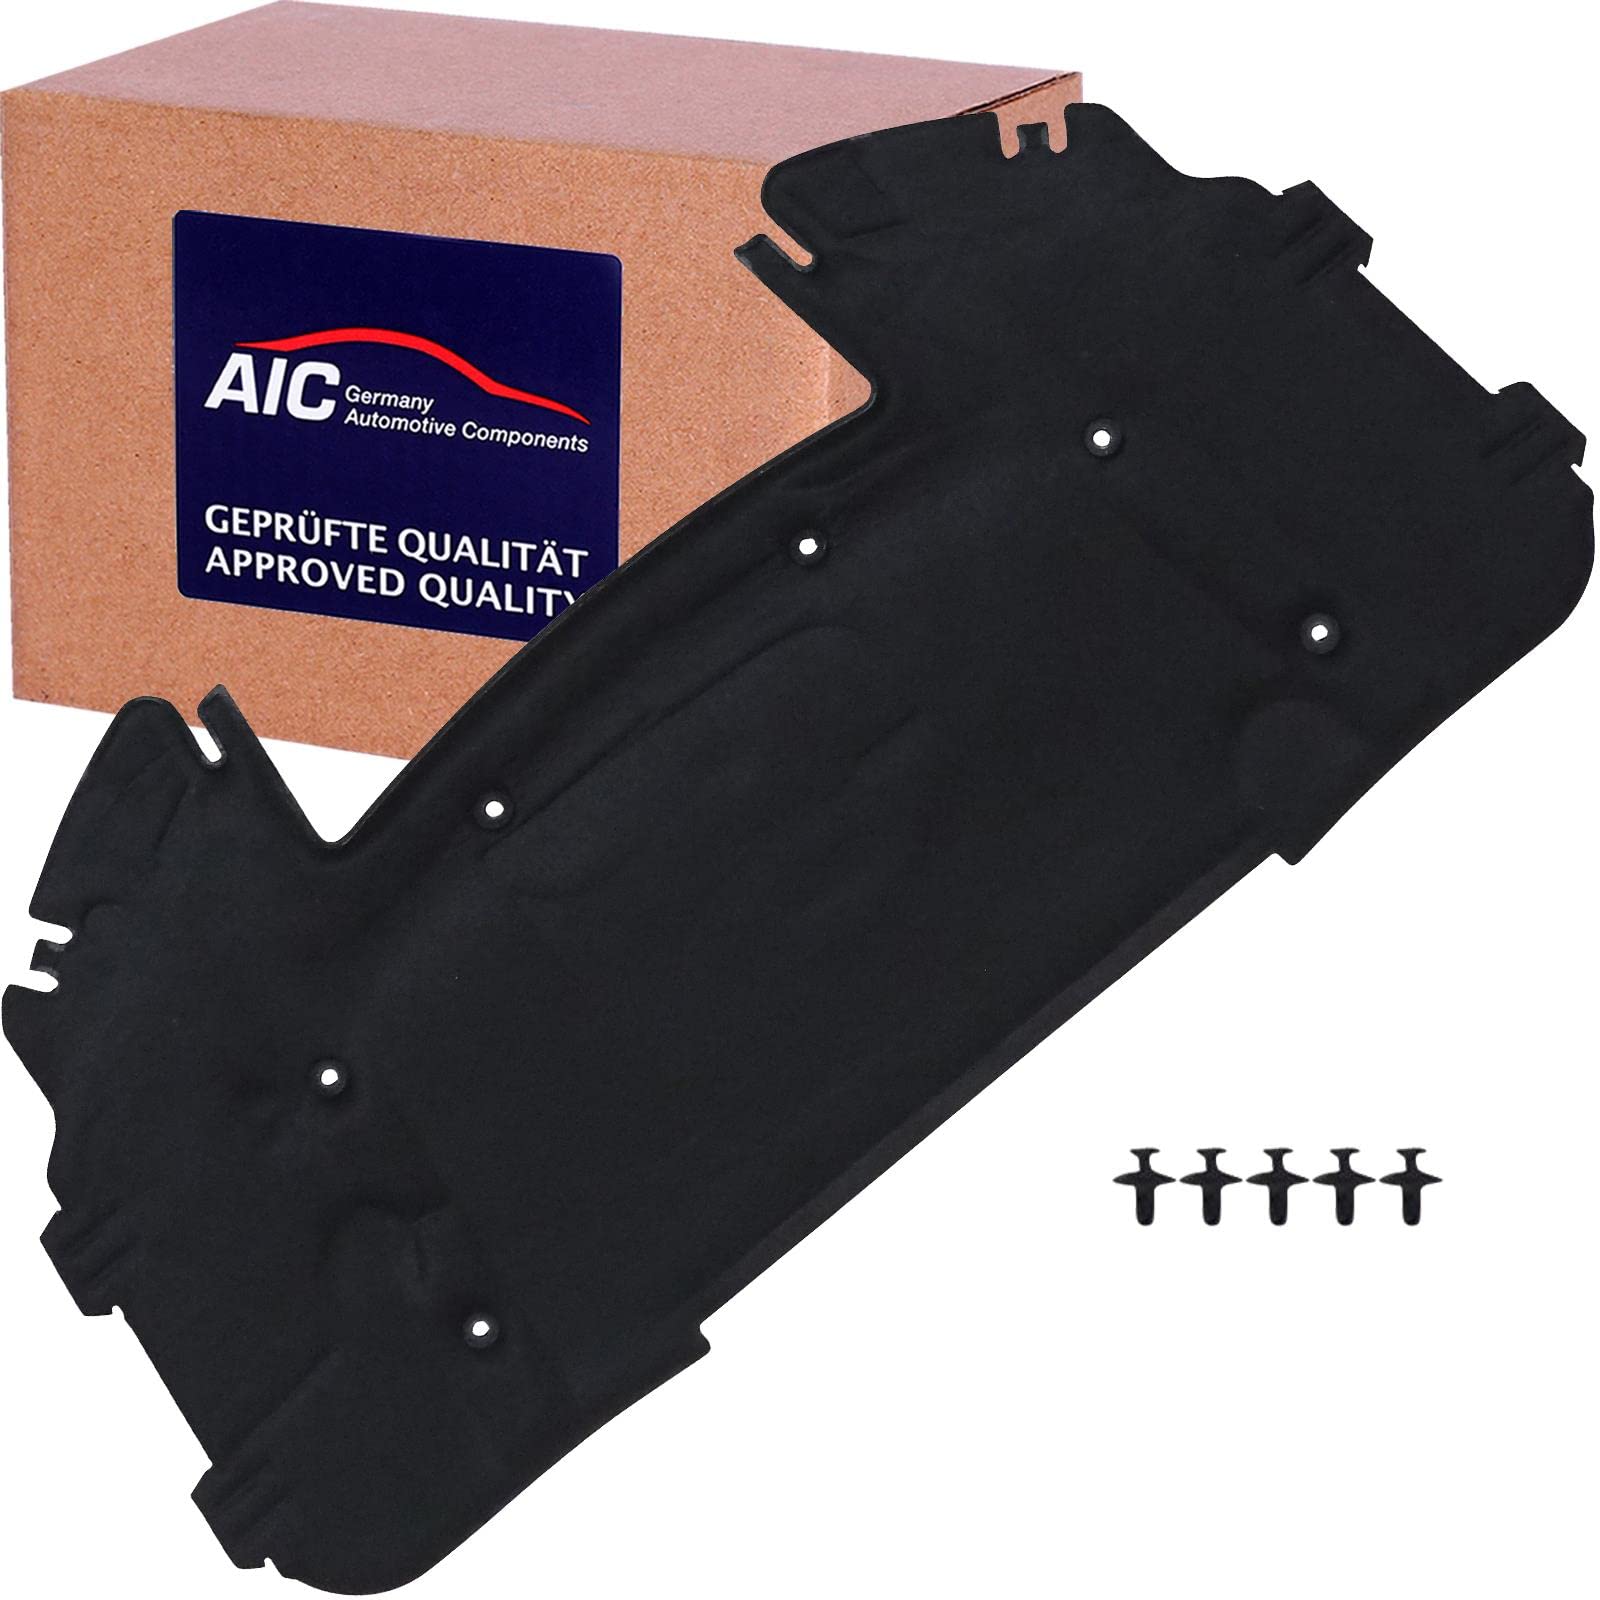 Motorraumdämmung Original AIC Quality Motorhaube von AIC (57088) Schalldämmung Karosserie Dämpfung, Motorraum, Dämpfung, Dämmung, Geräuschdämmung von AIC